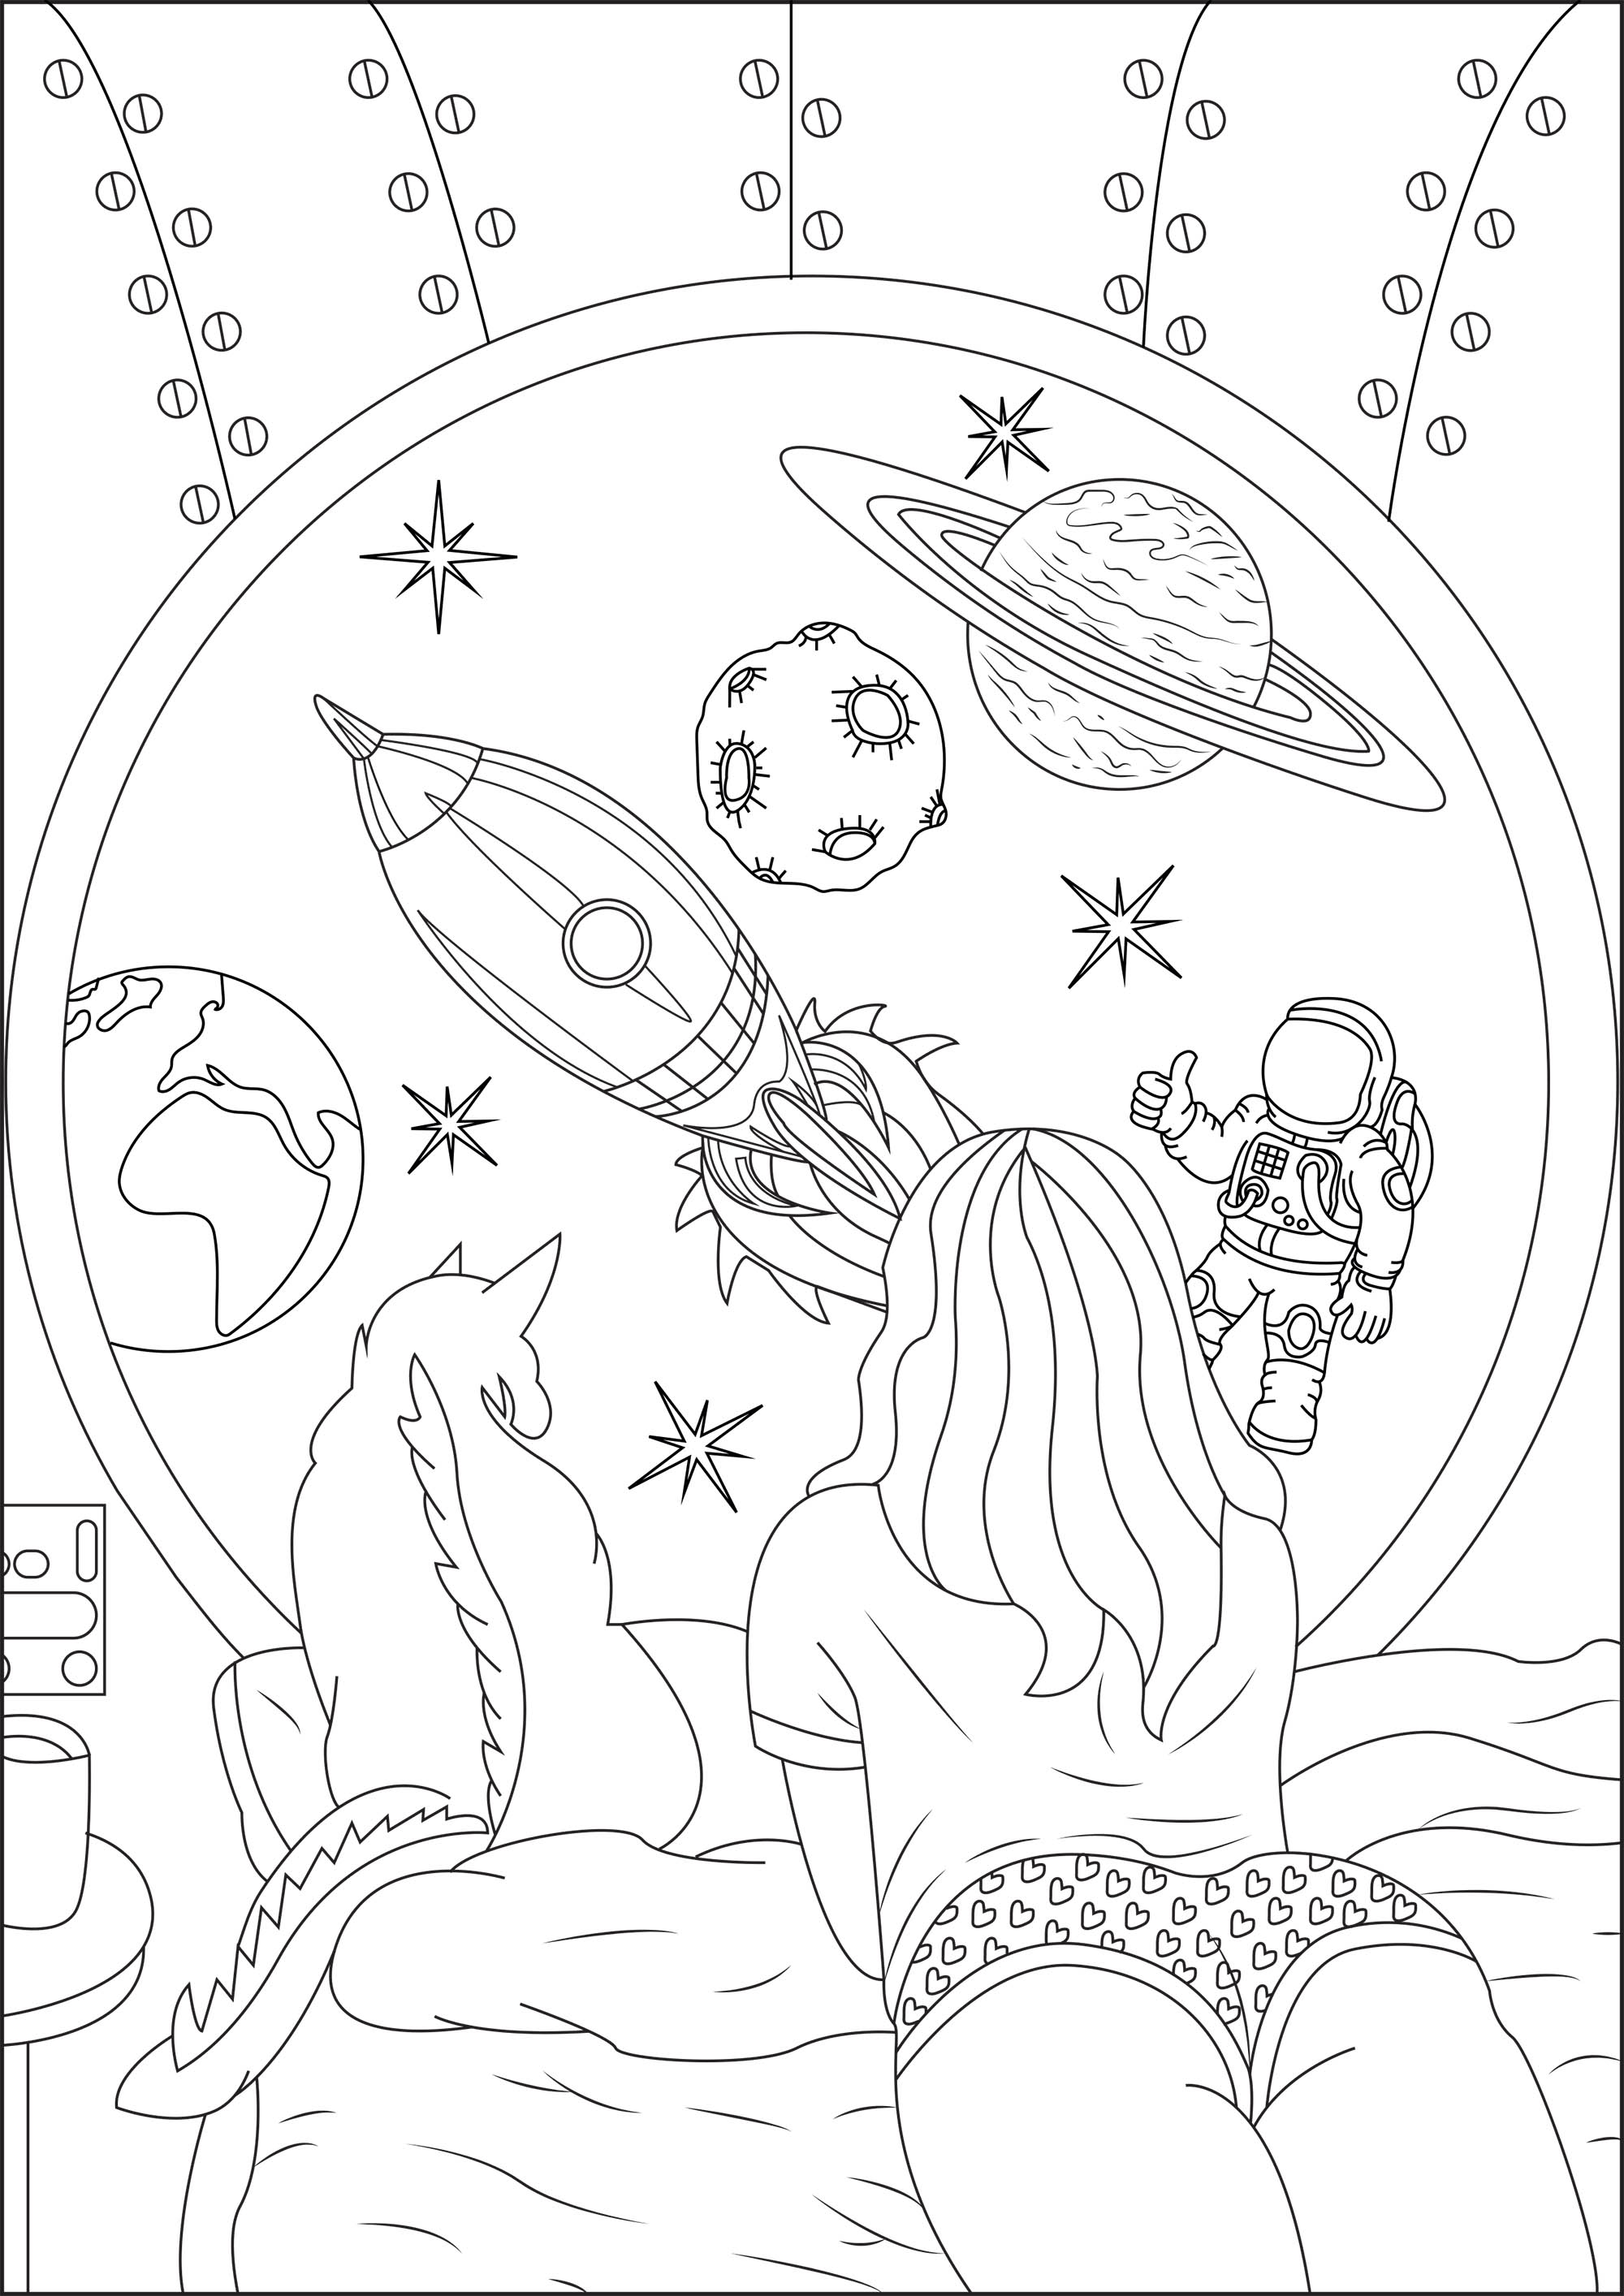 Mädchen träumt mit ihrer Katze von der Raumfahrt. Durch das Bullauge ihres Shuttles sieht sie: eine Rakete, den Mond, die Erde, einen Asteroiden, den Saturn, einen Astronauten und schöne, helle Sterne.